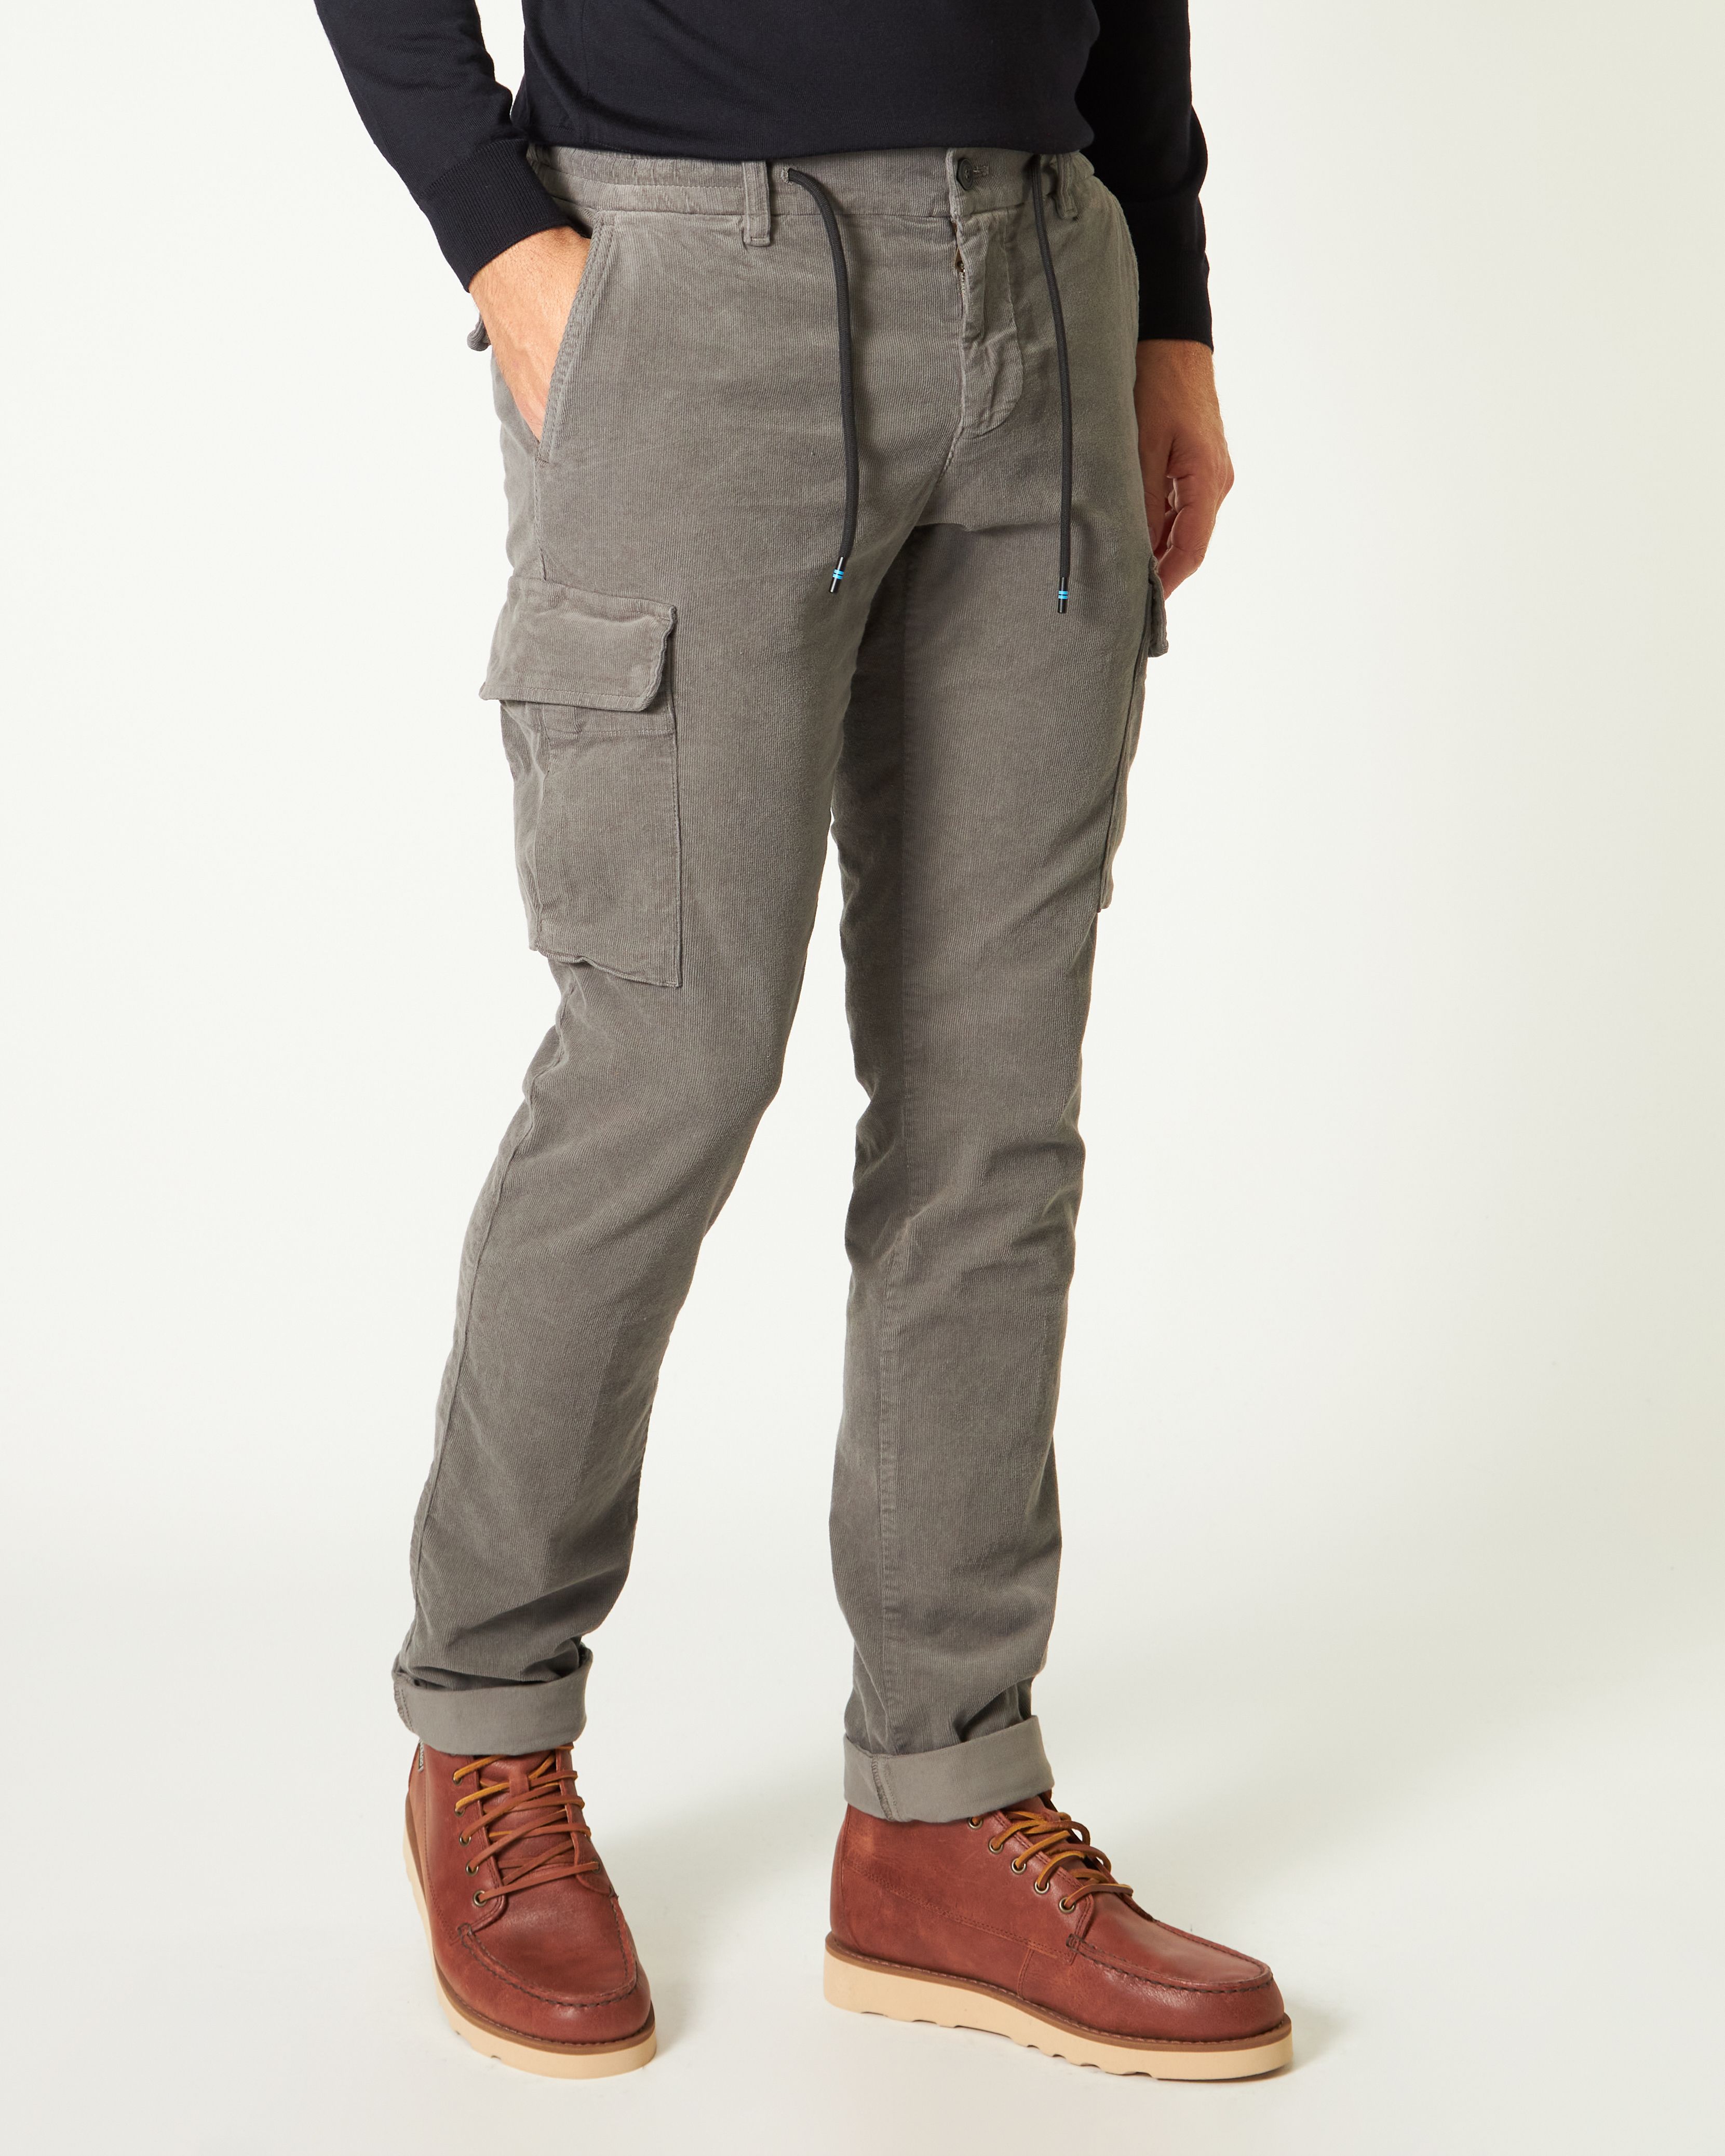 Pantalone cargo Chile Joggerin velluto di cotone strecht 2000 righe grigio scuro